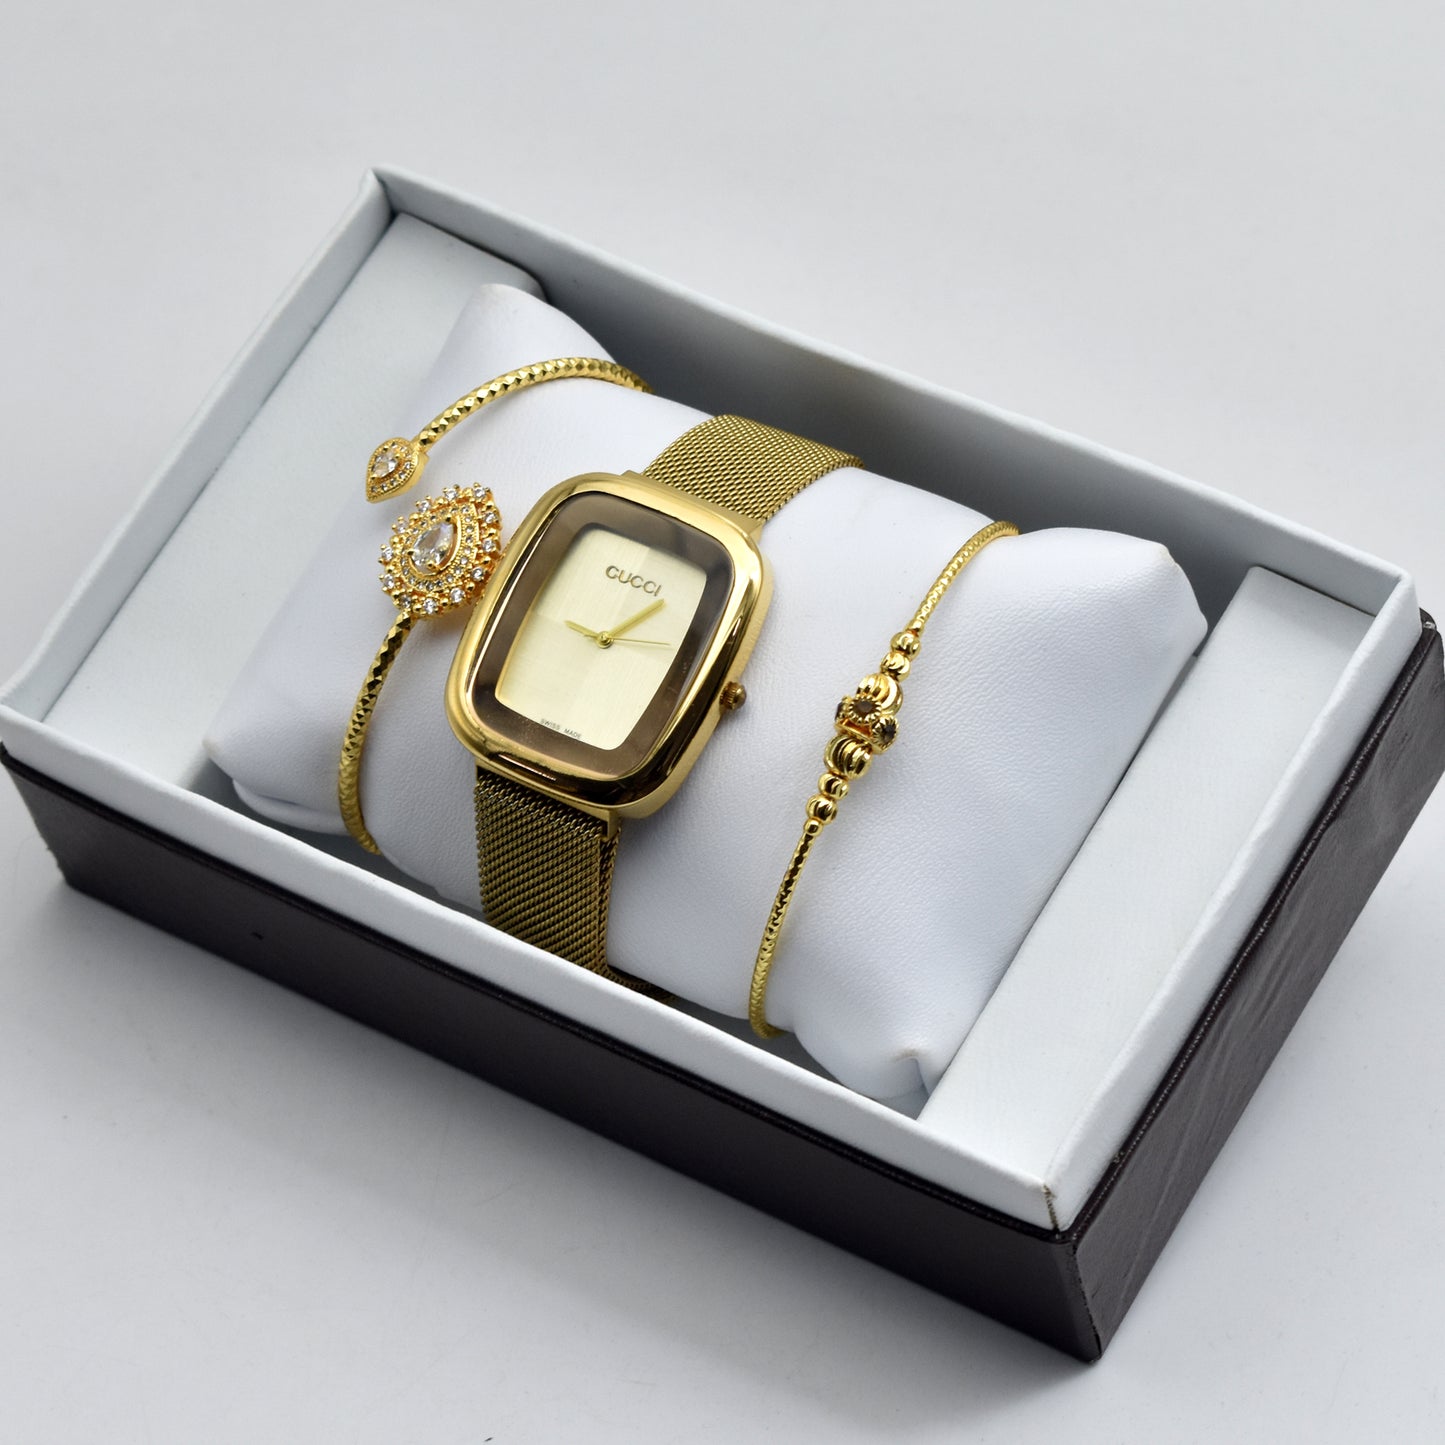 Stylish Quality Bracelet Watch for Her - GC Watch 01